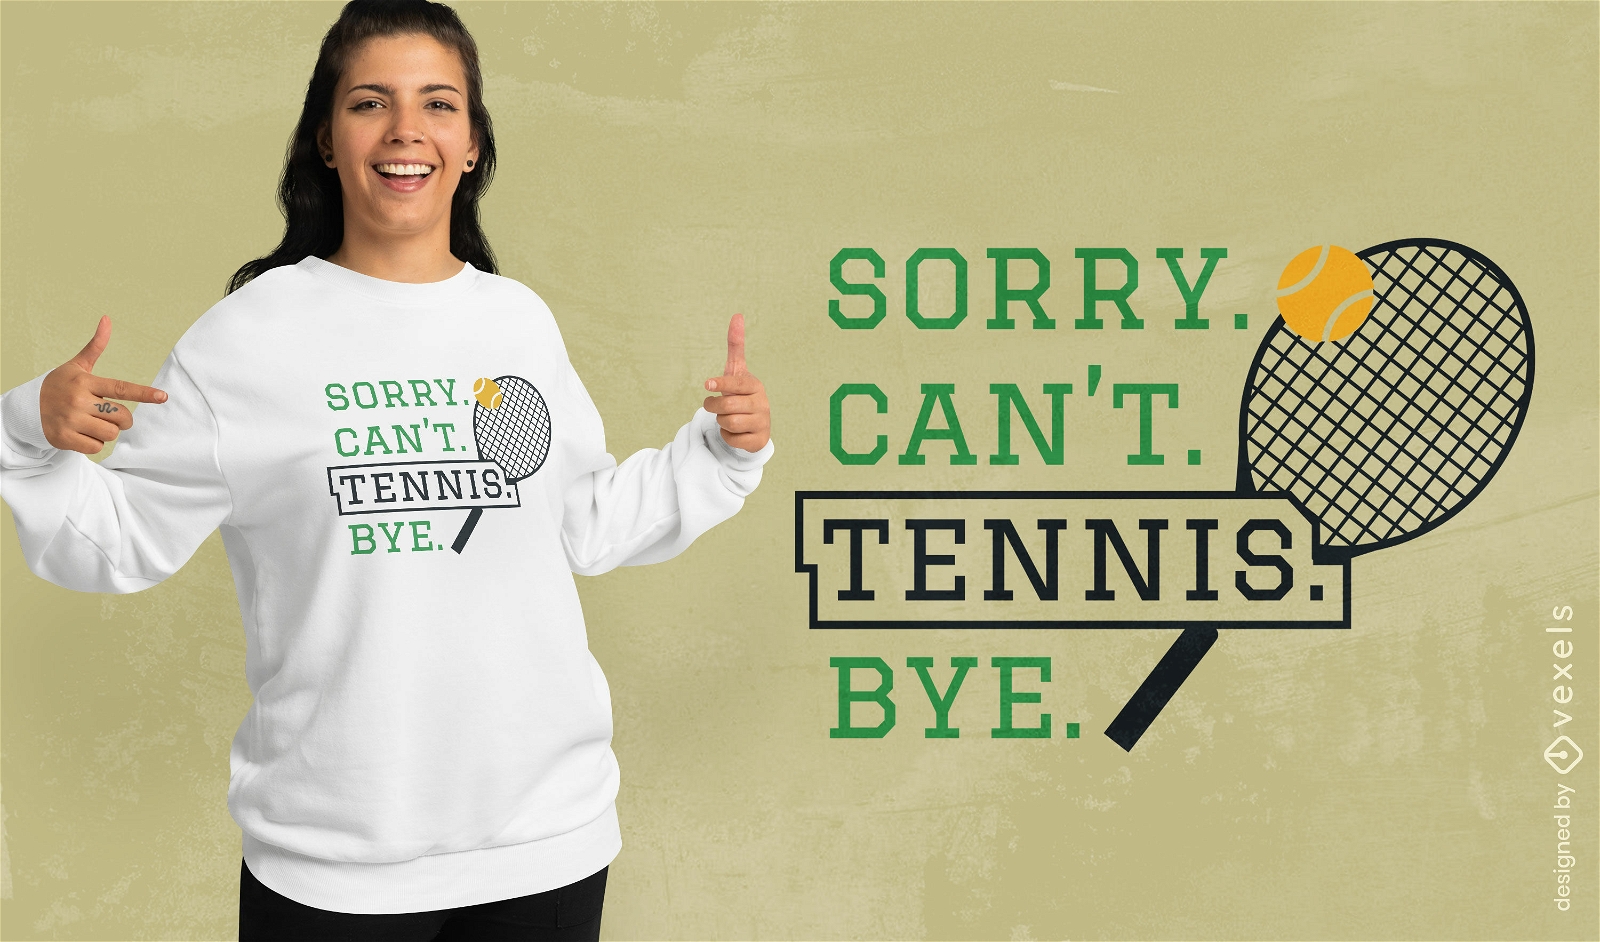 Diseño de camiseta con una declaración de tenis humorística.